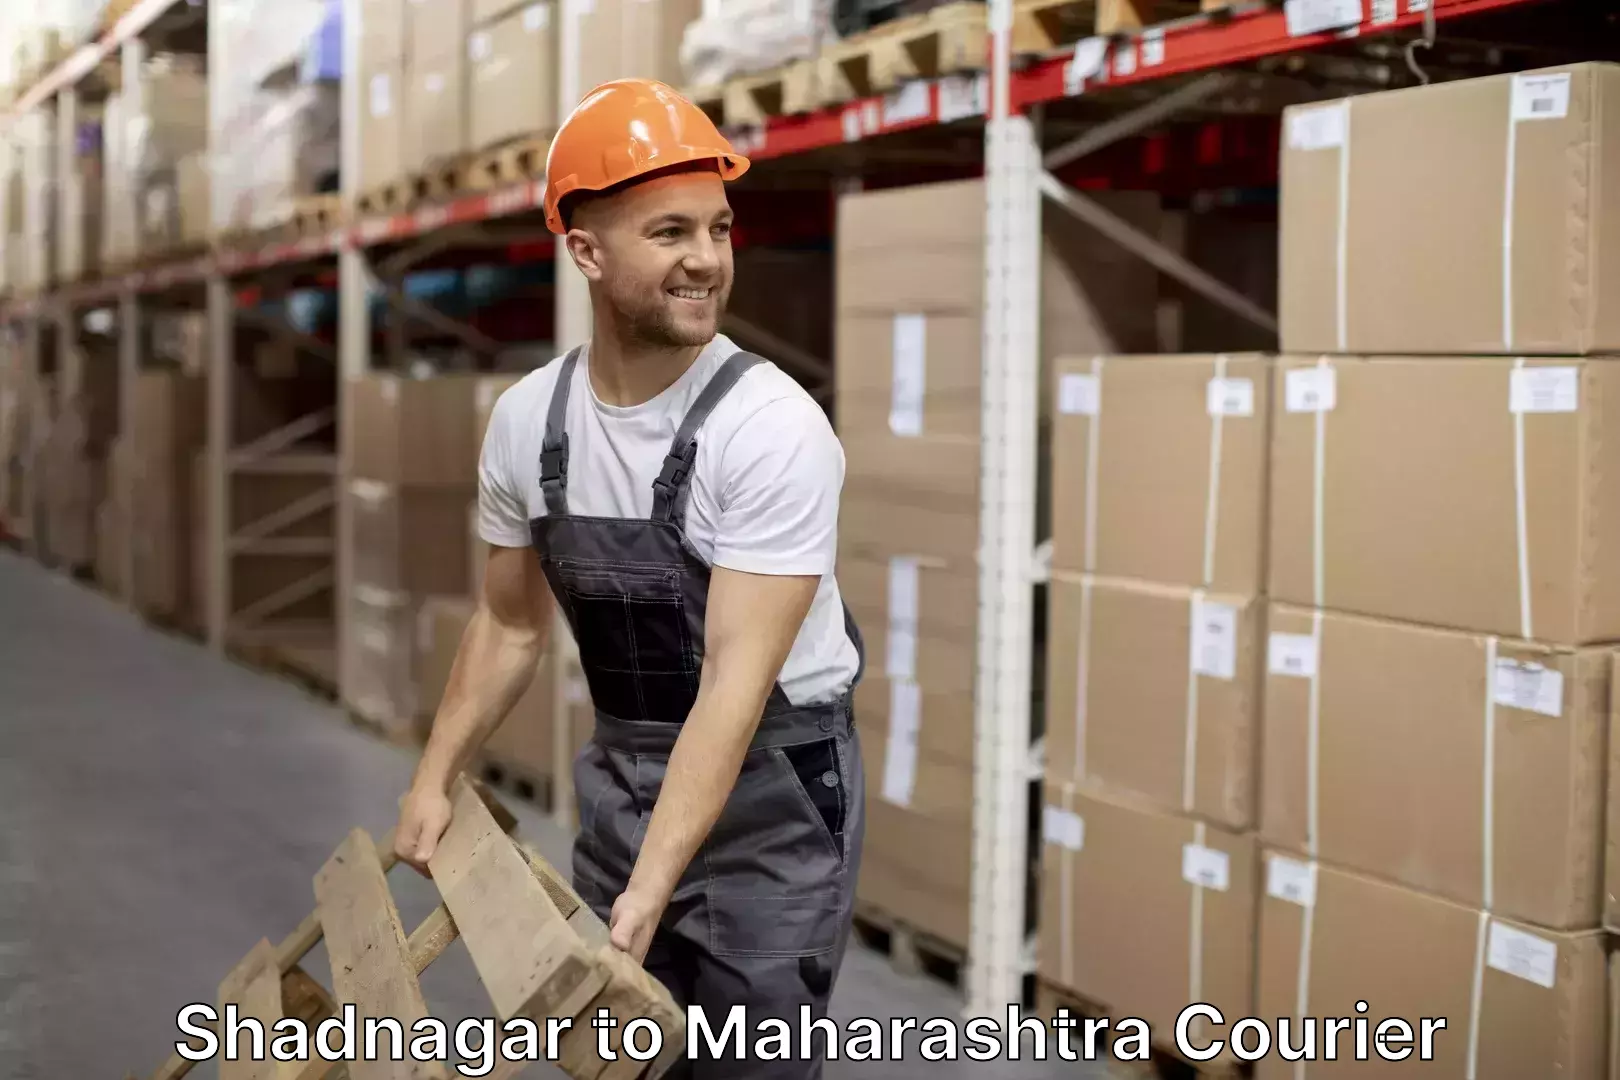 Professional packing services Shadnagar to Maharashtra